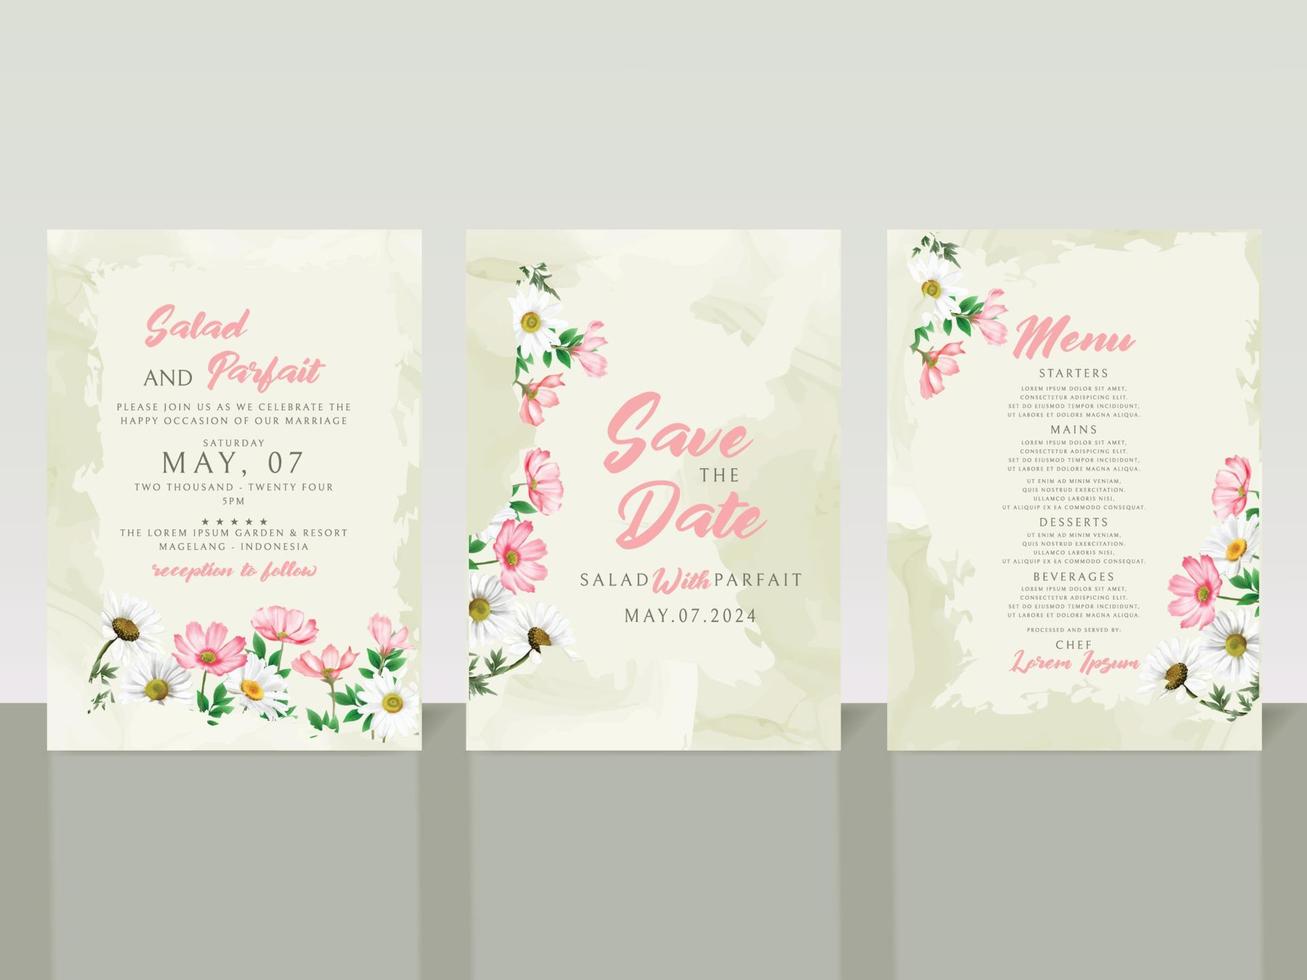 cartão de convite de casamento elegante flores brancas e rosa vetor